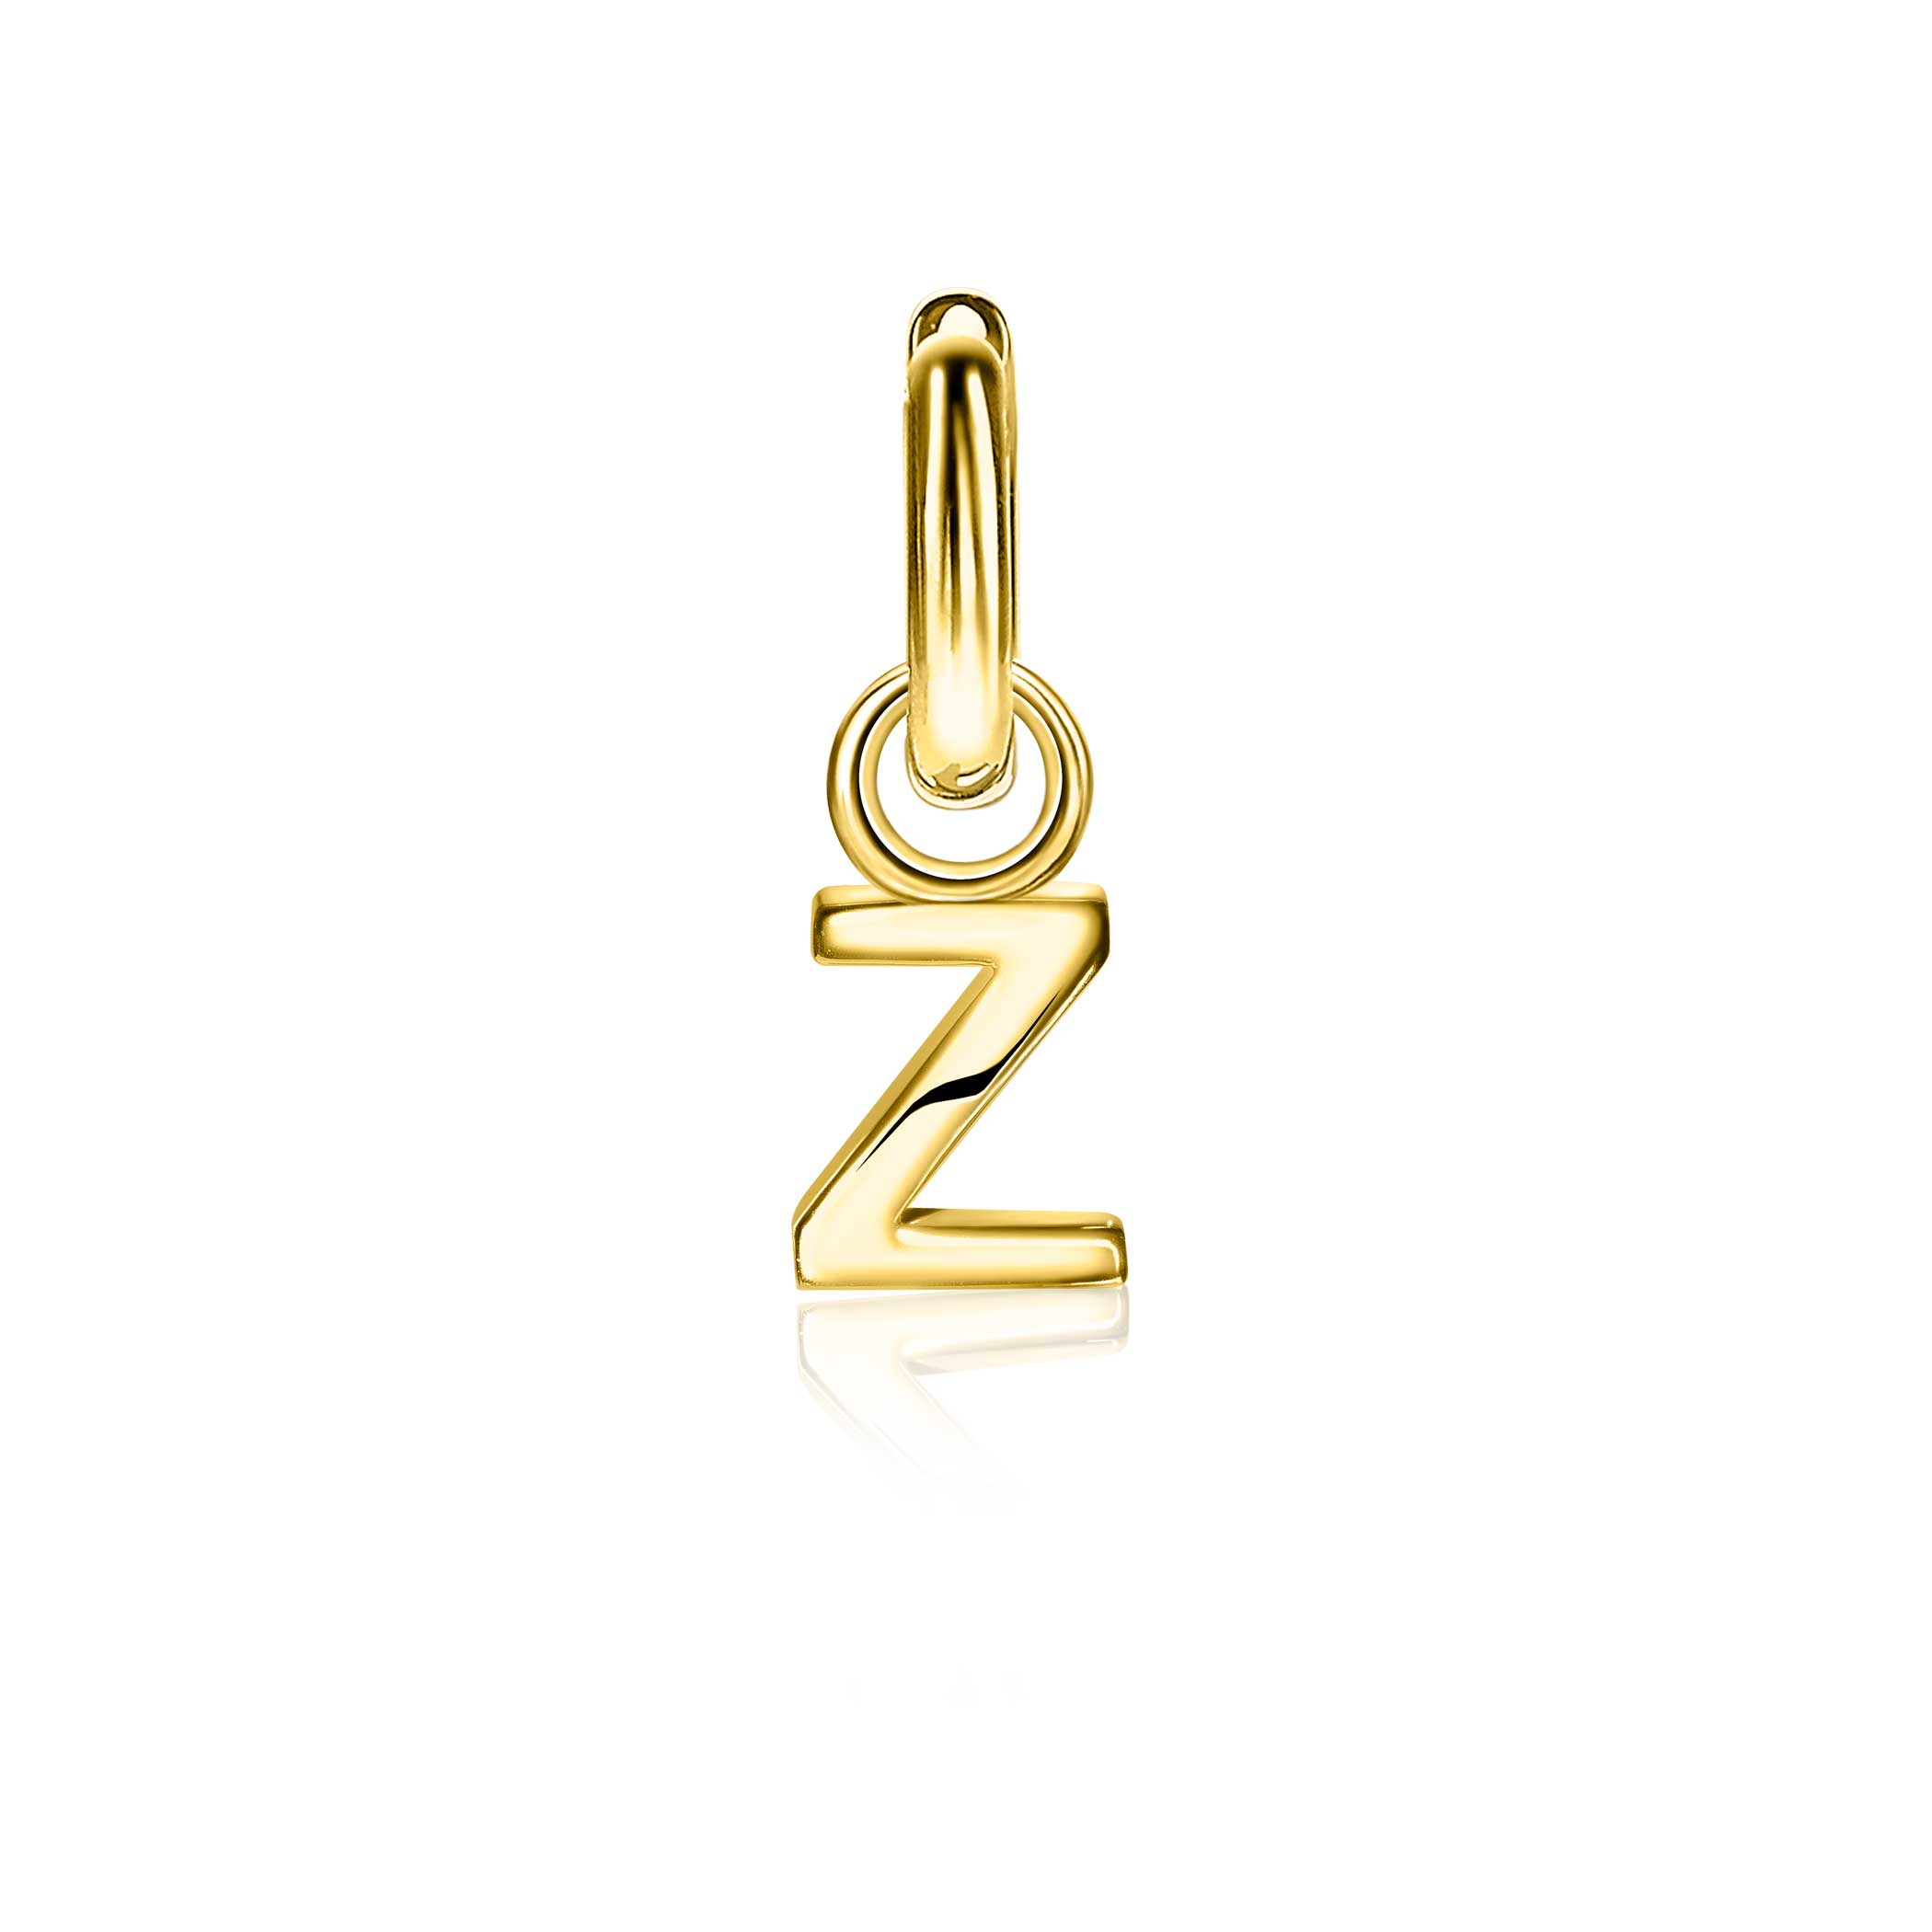 ZINZI zilveren geelvergulde letter oorbedel Z per stuk geprijsd ZICH2145Z. (zonder oorringen).